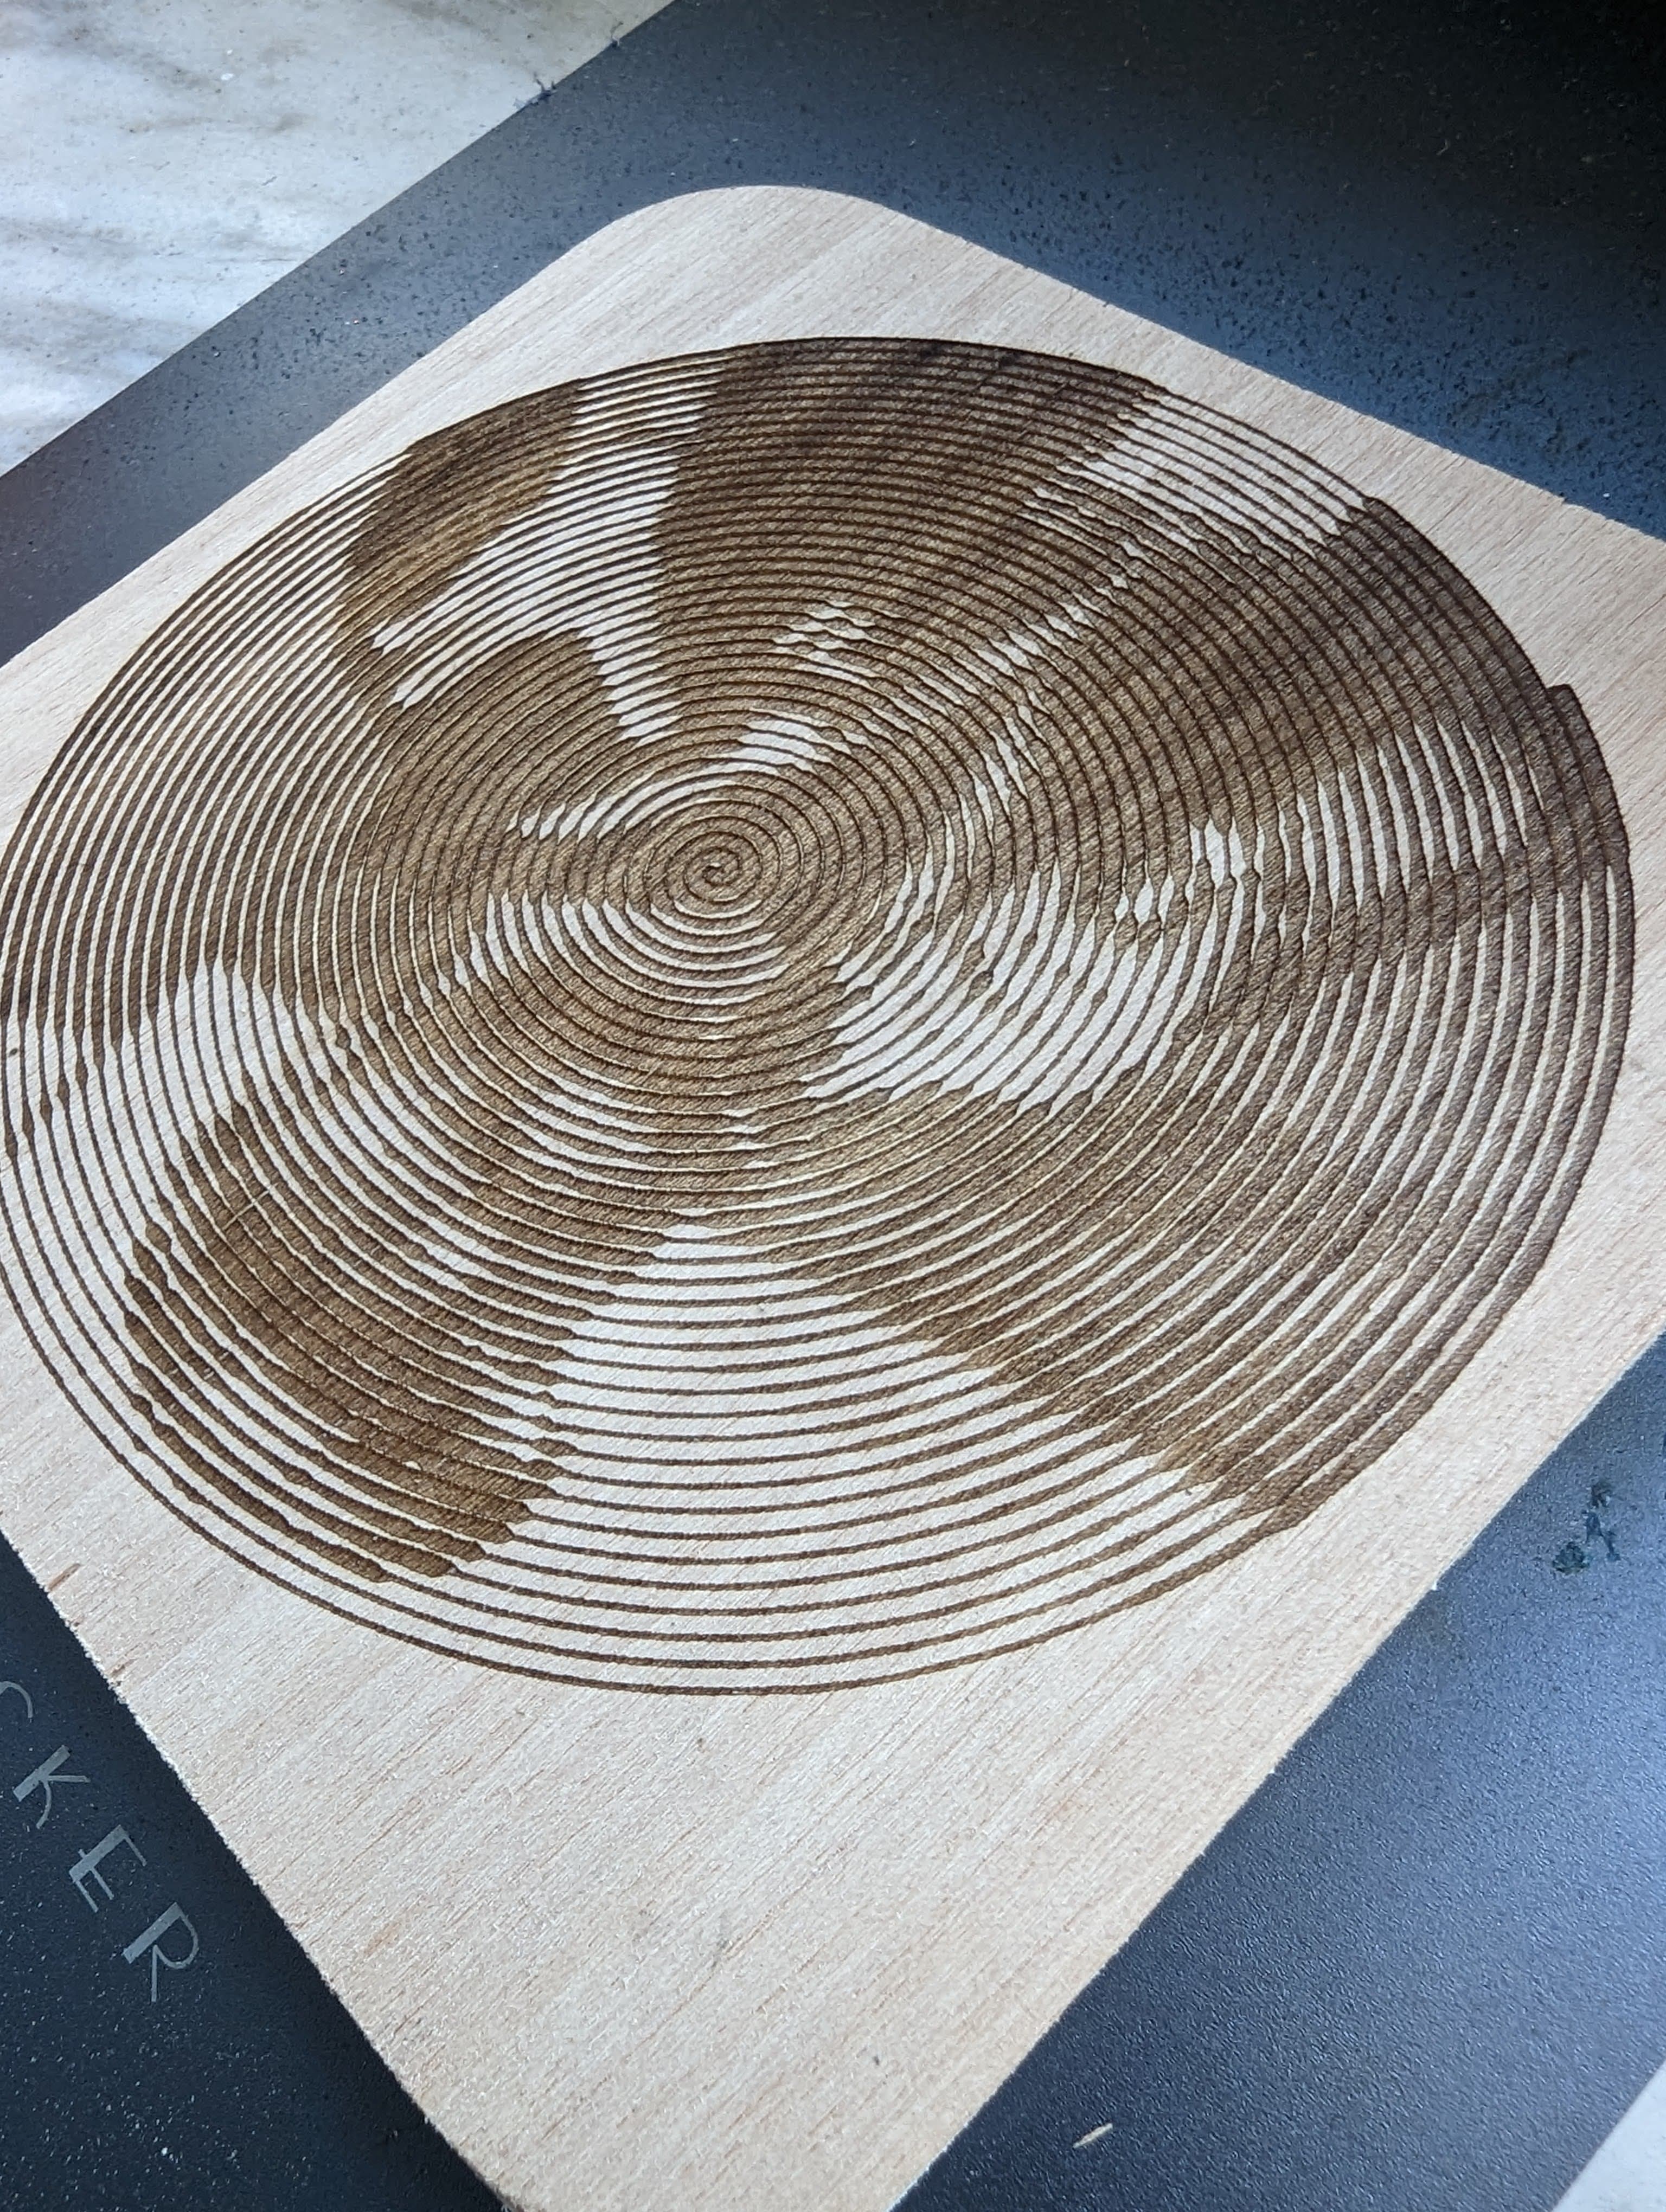 ho stampato su legno con la laserpercker 2 il template di spiral betty